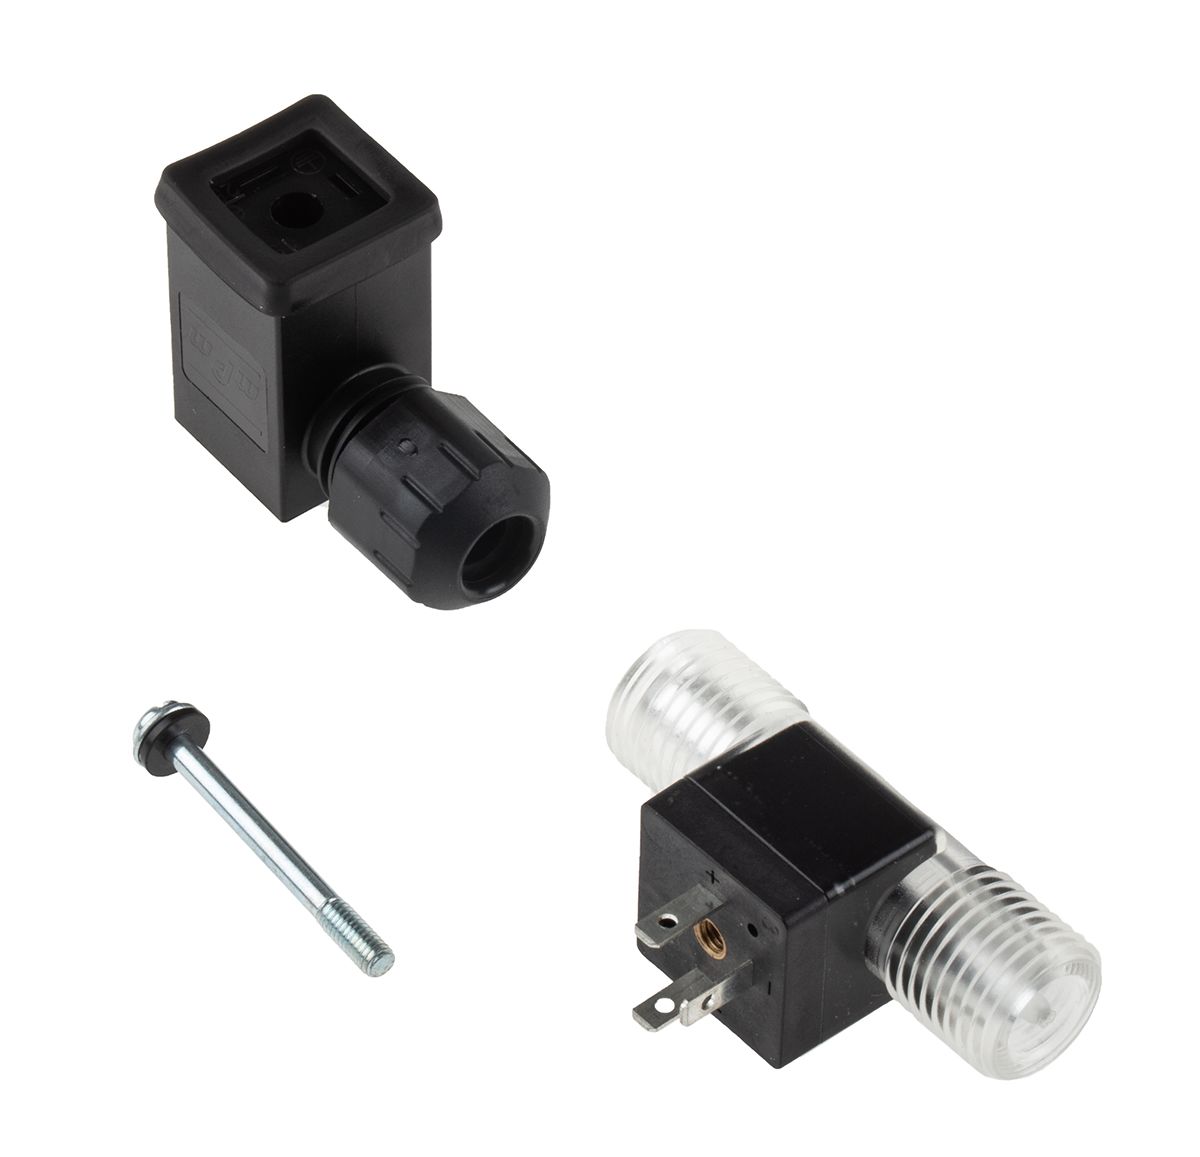 Gems Sensors FT-210 Series Turbine Flow Sensor for Liquid, 0.026 gal/min Min, 0.65 gal/min Max